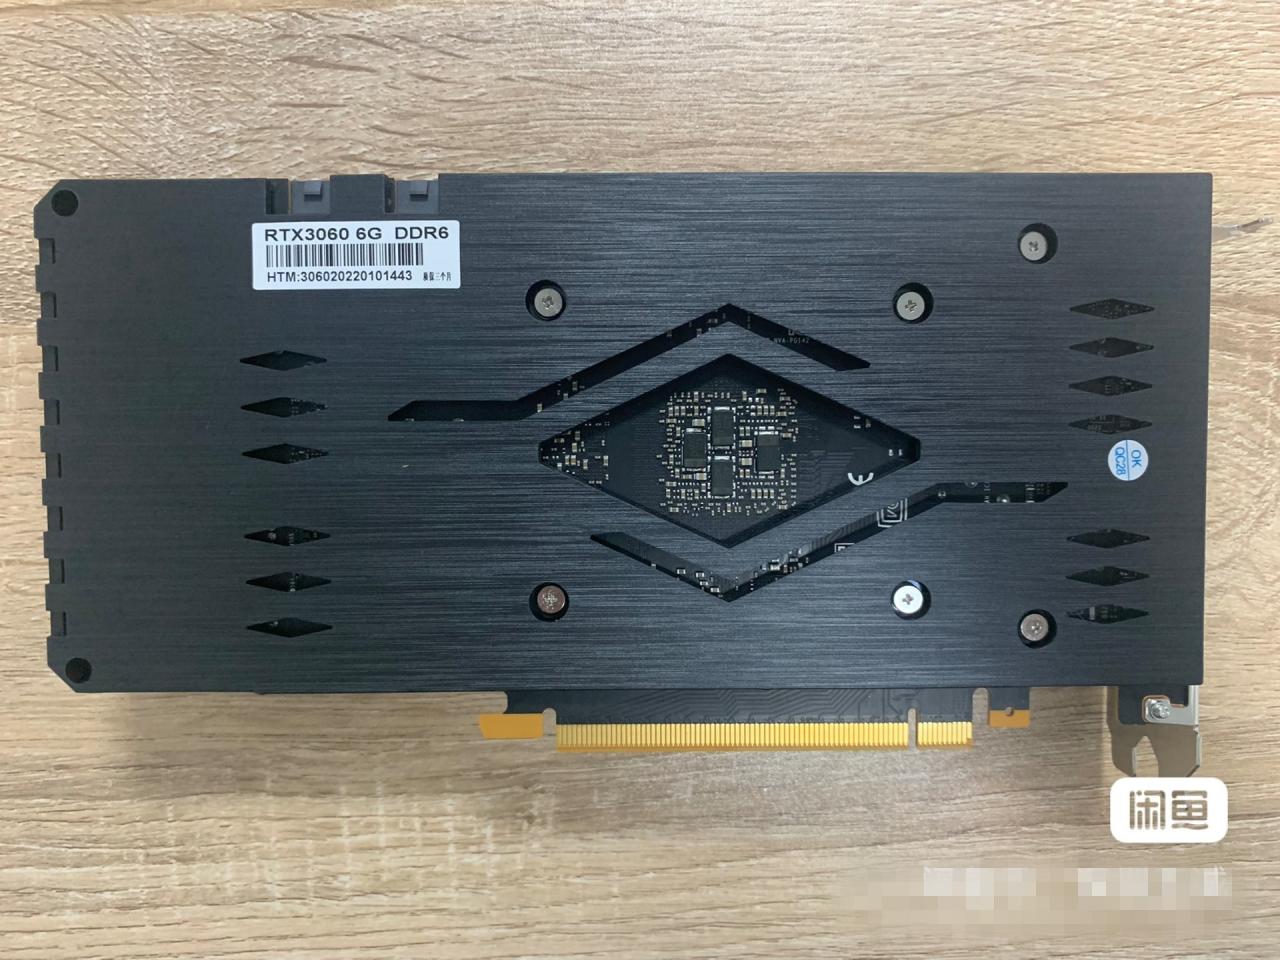 Chiński producent OEM przerabia laptopowe GPU z GeForce'a RTX 3060 na karty dla górników